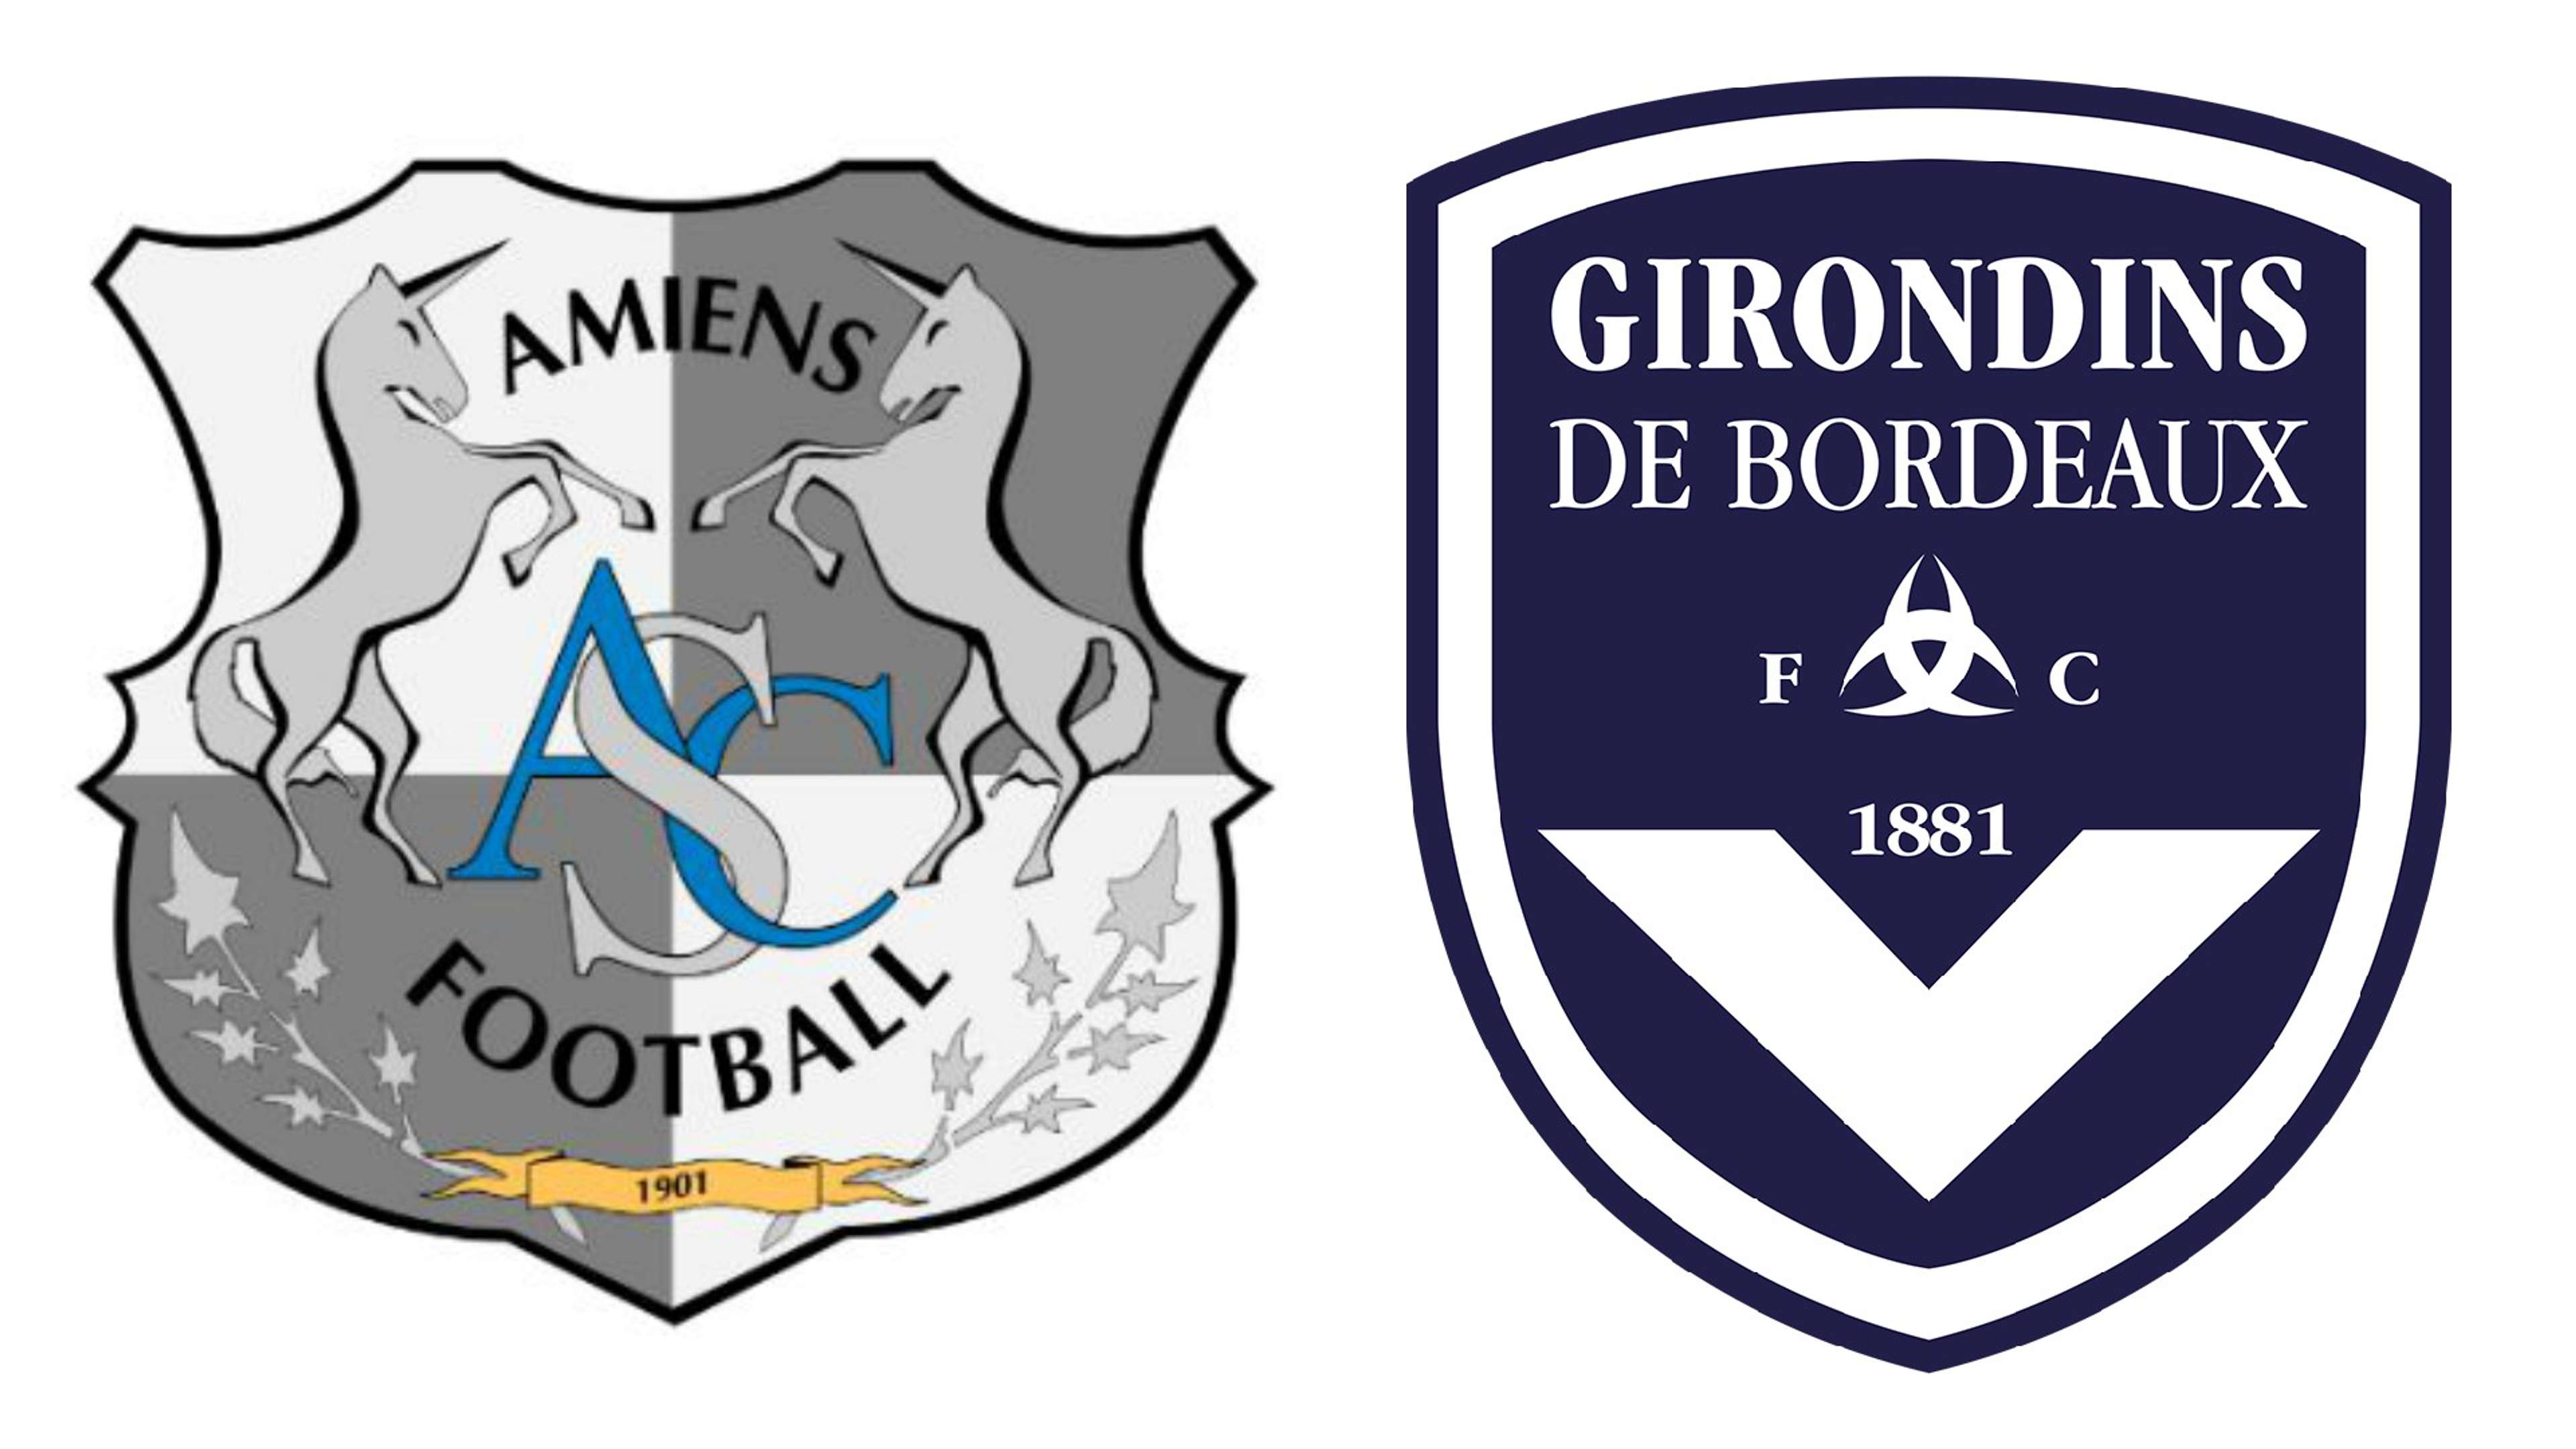 Amiens SC-Girondins de Bordeaux, 7ème journée de Ligue 1, le mercredi 25 septembre 2019